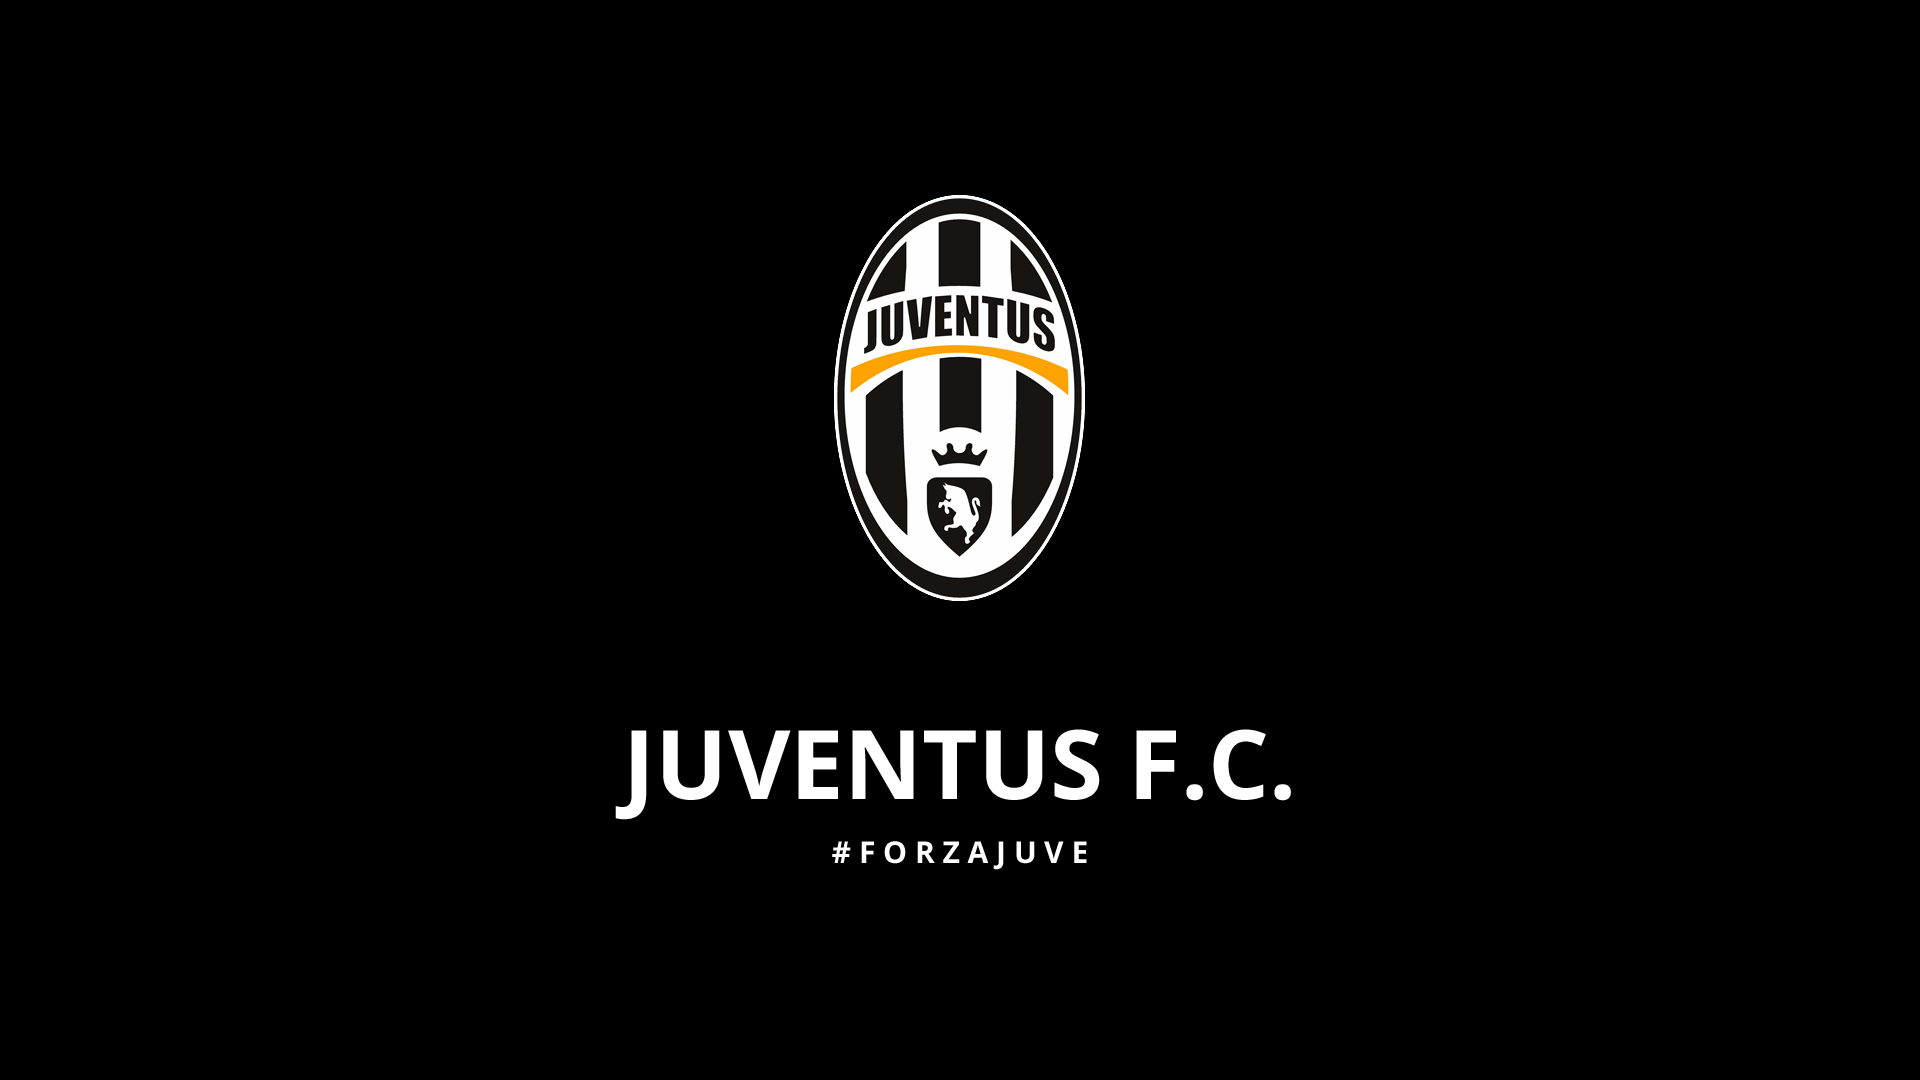 Juventus F.C. Wallpaper 6 X 1080